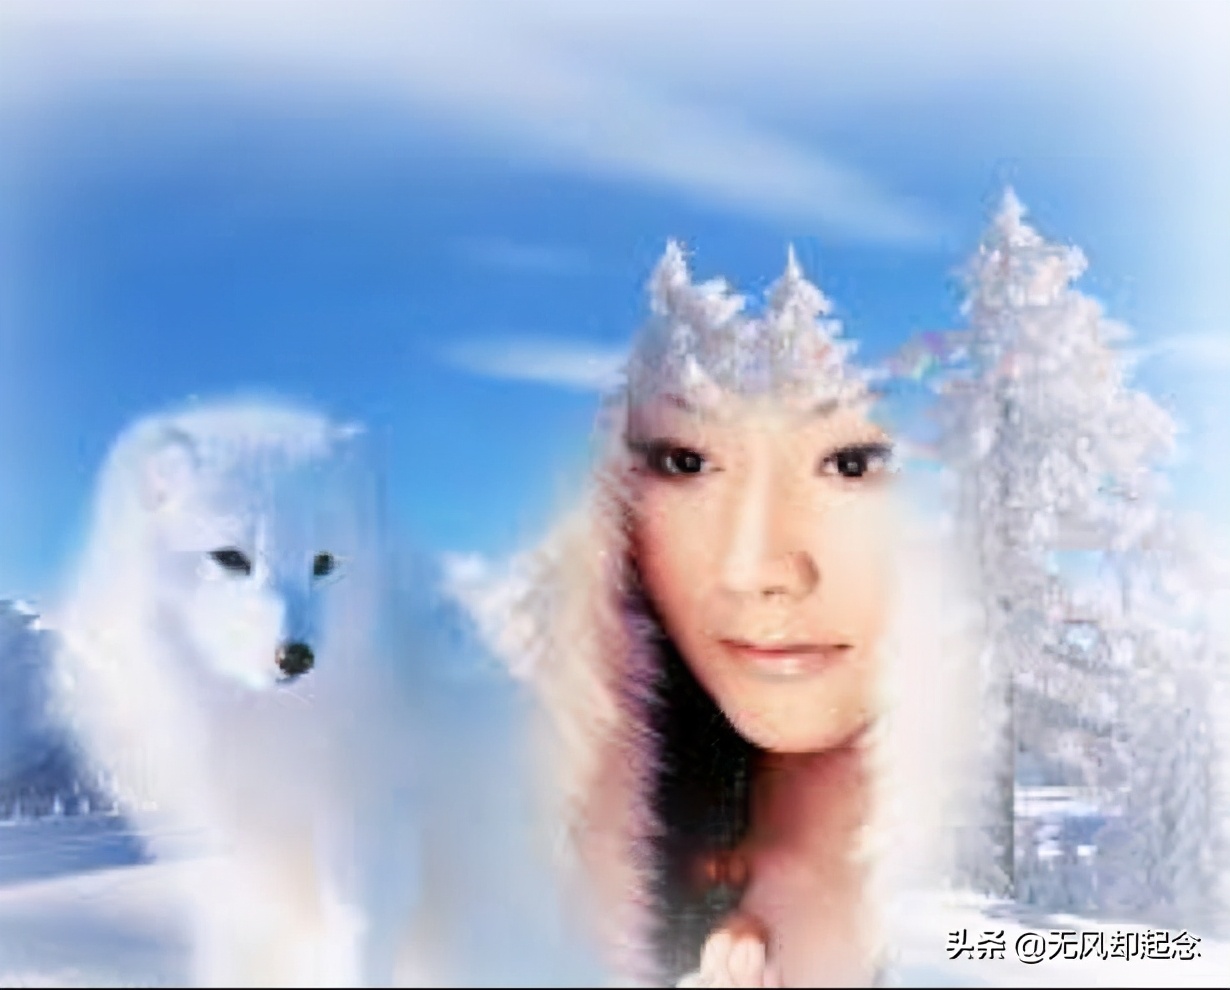 李广从苍鹰爪下救下一只白狐，20年后，它变成一美丽女子来报恩